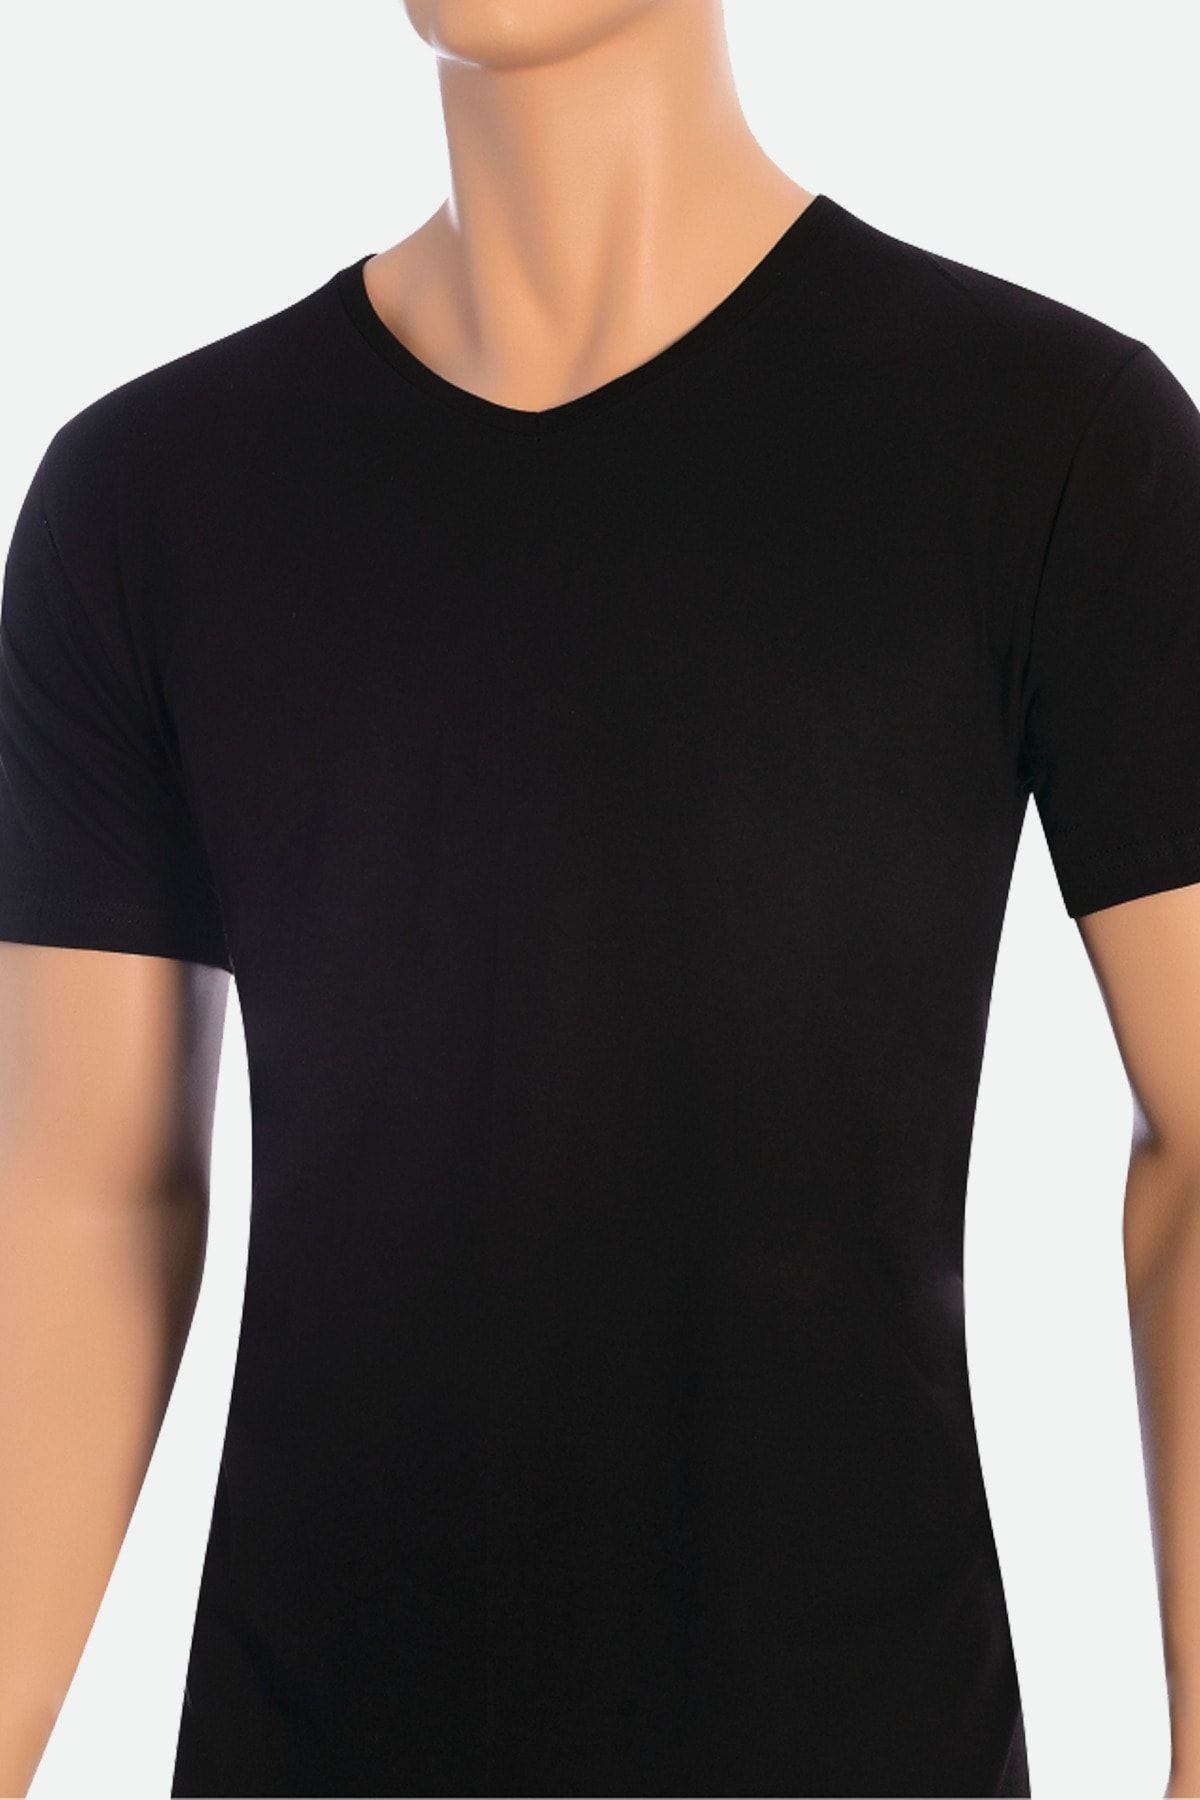 Öts 2'li Erkek Süprem V Yaka T-shirt Siyah (%100 Pamuk)